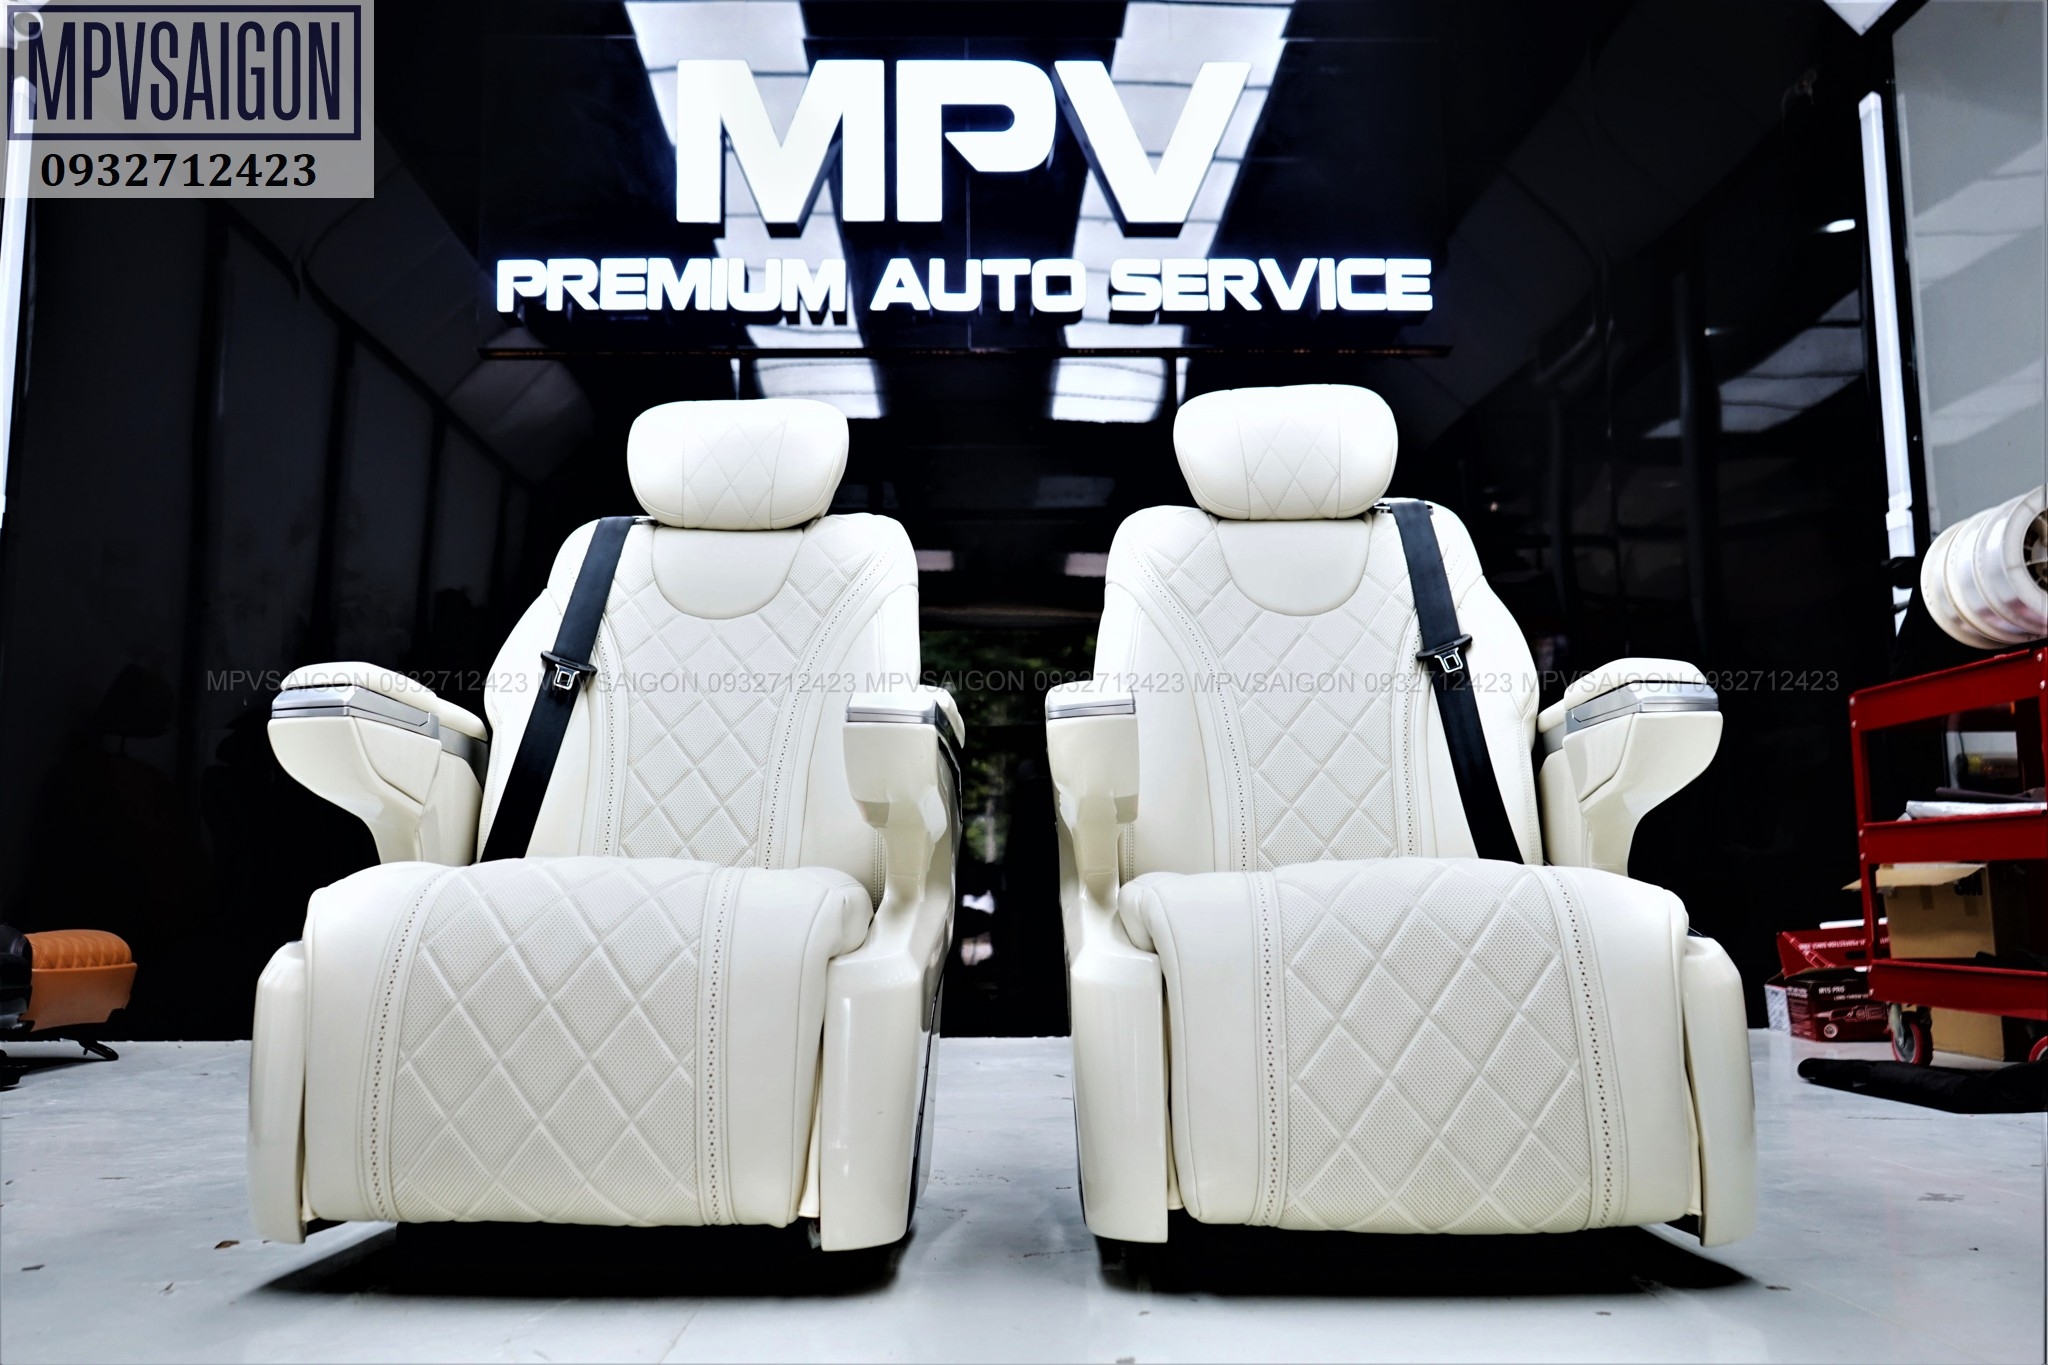 Ghế limousine trắng siêu sang cho các dòng MPV